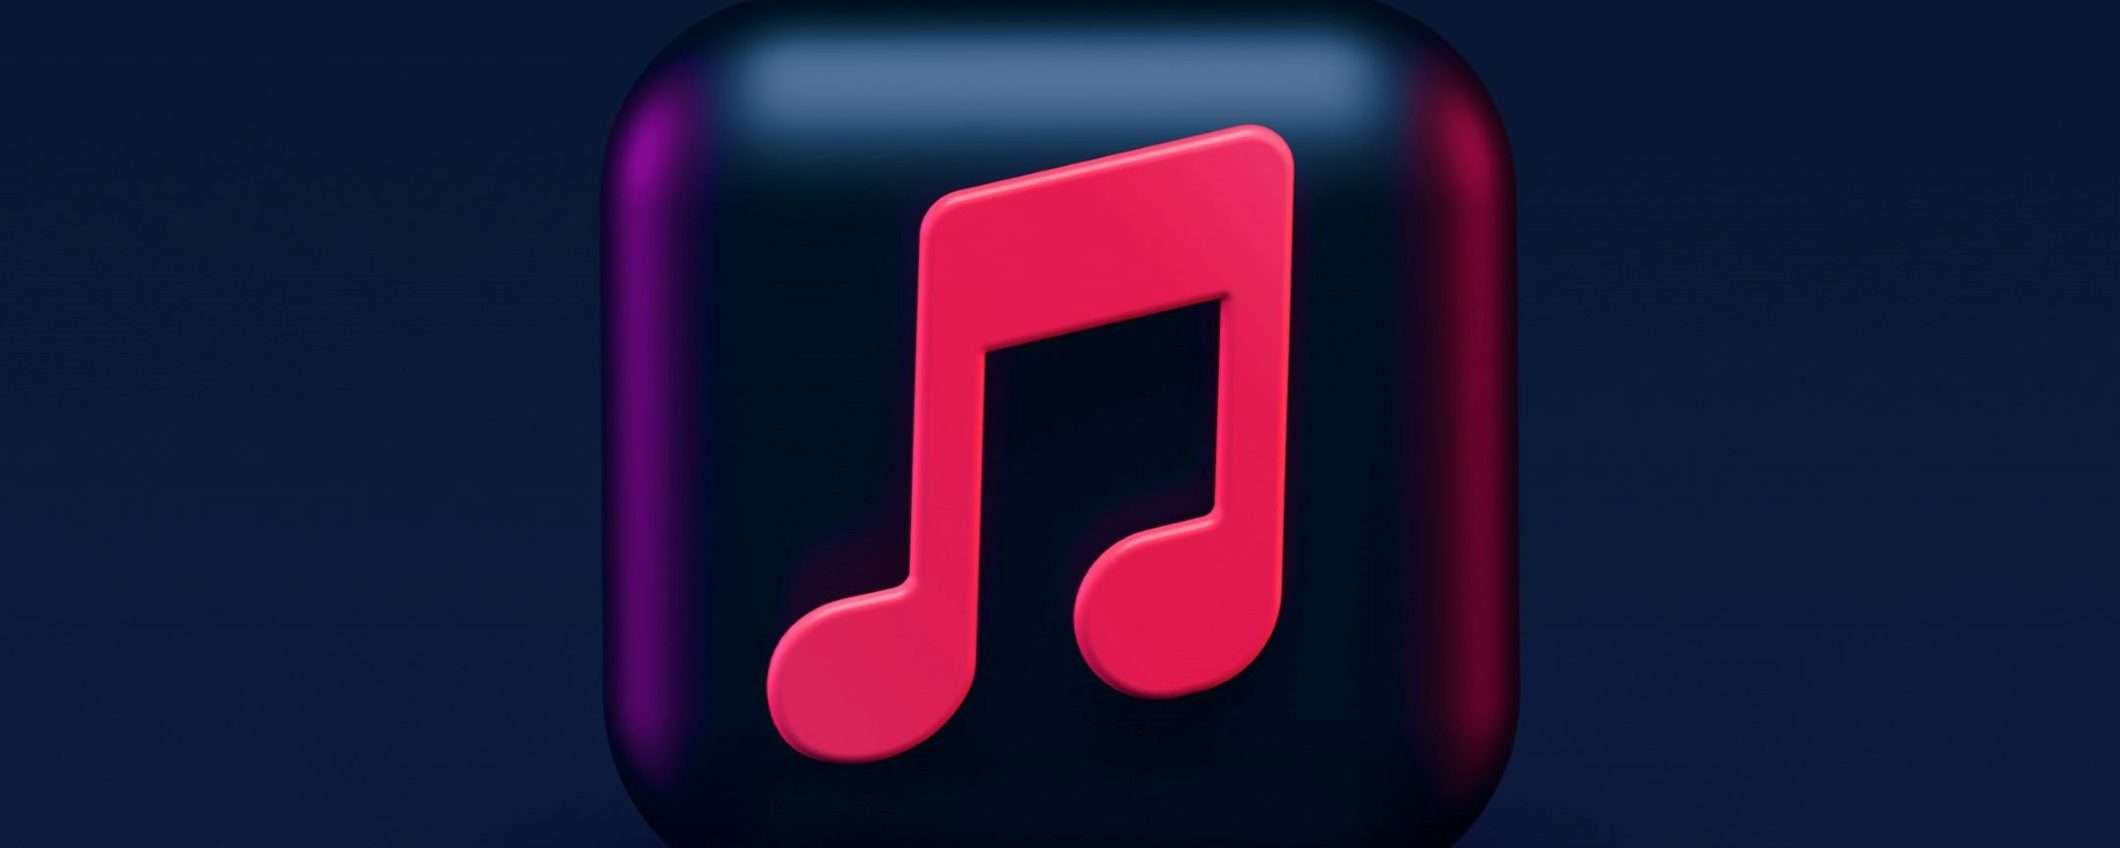 Prova gratis per 1 mese Apple Music con oltre 100 milioni di canzoni senza pubblicità